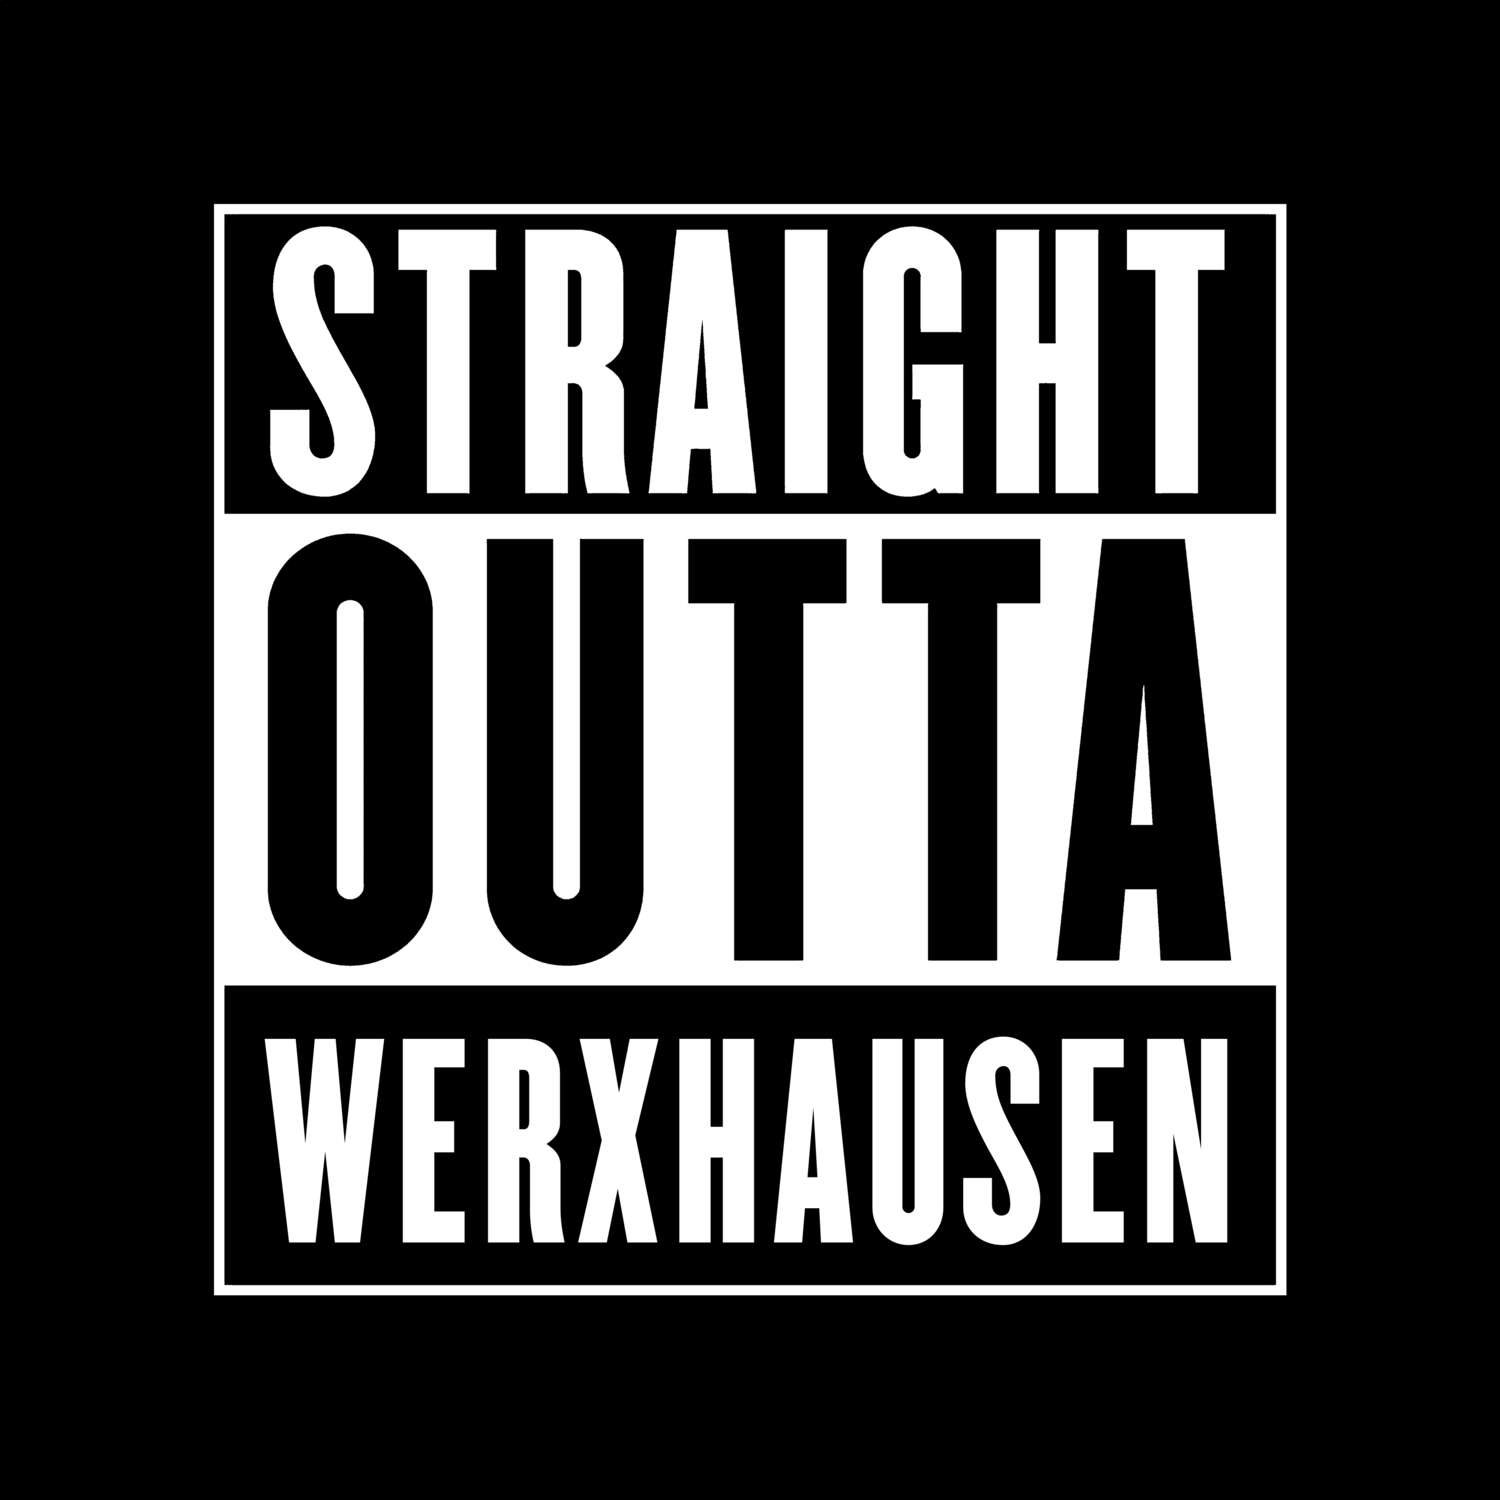 Werxhausen T-Shirt »Straight Outta«